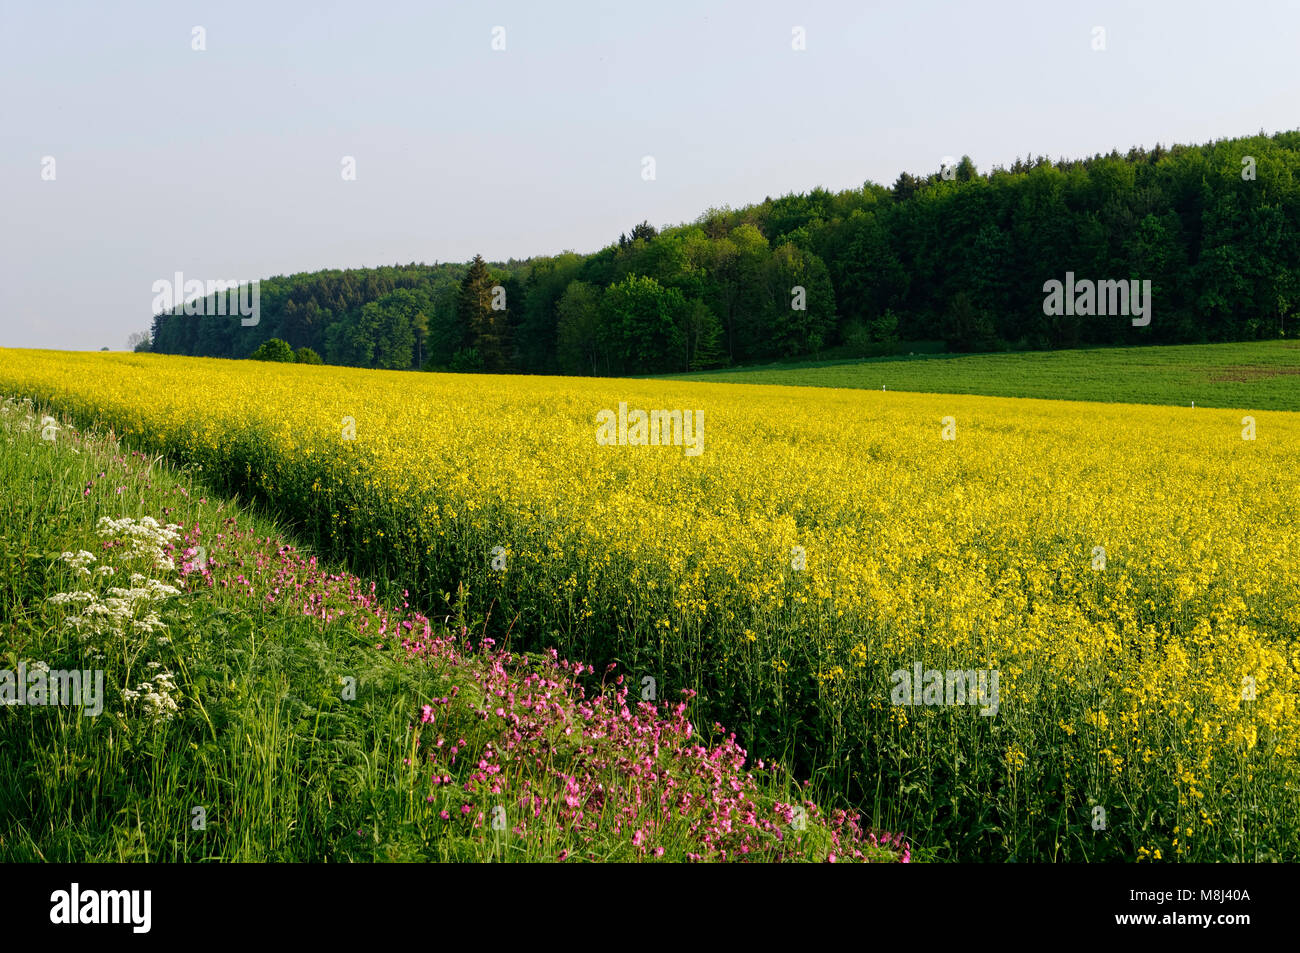 Canola field near Feldstetten (part of laichingen) on the Swabian Alps, Alb-Donau District, Baden-Württemberg, Germany Stock Photo